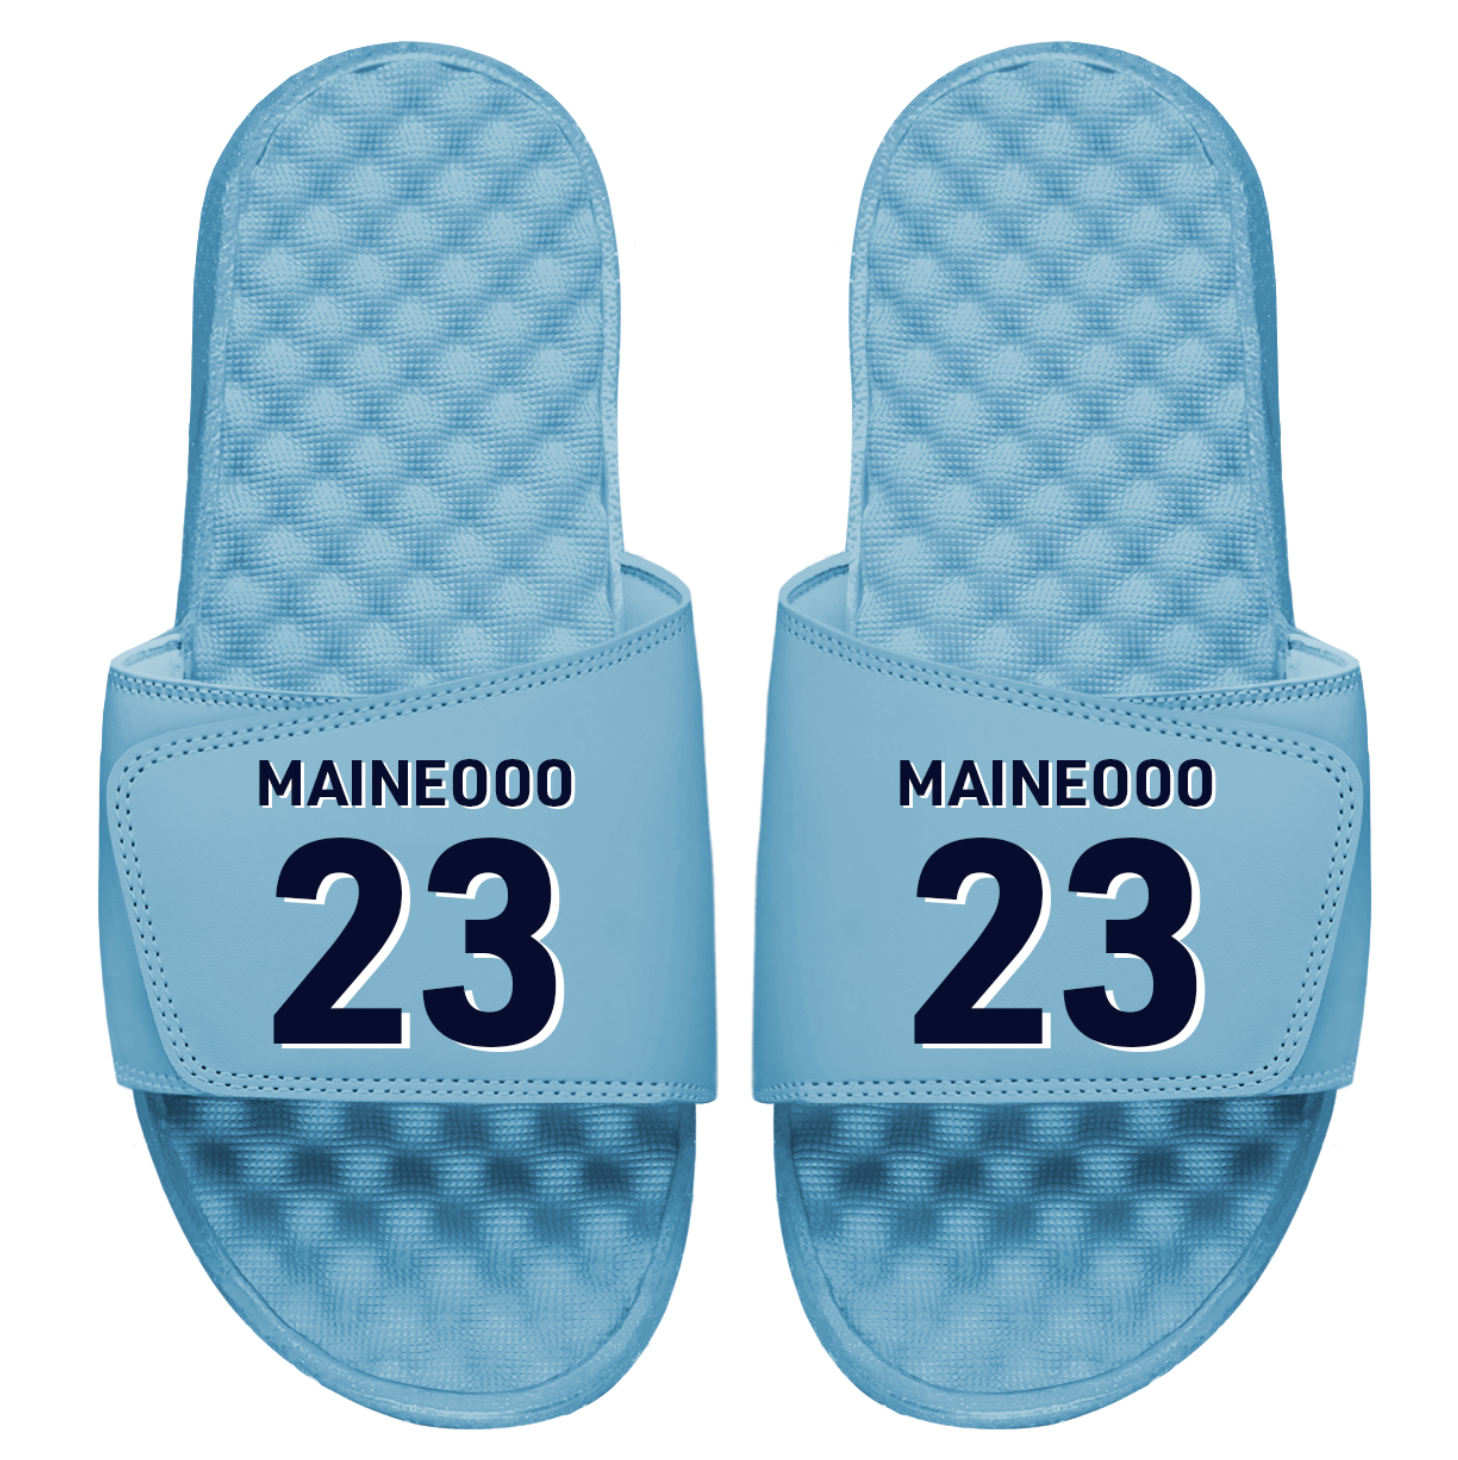 Maineooo 23 Slides